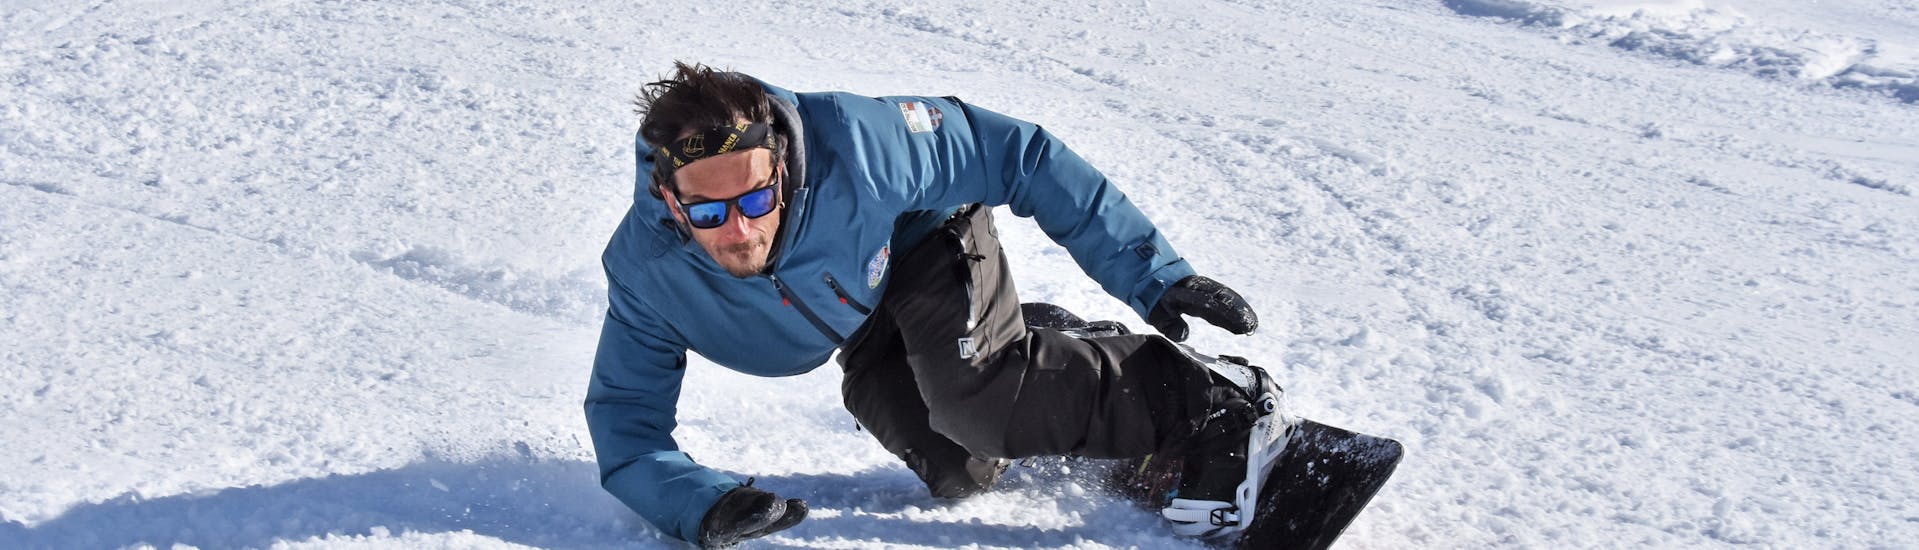 Un istruttore di snowboard si allena a Bardonecchia per una delle lezioni private di snowboard per bambini e adulti di tutti i livelli.